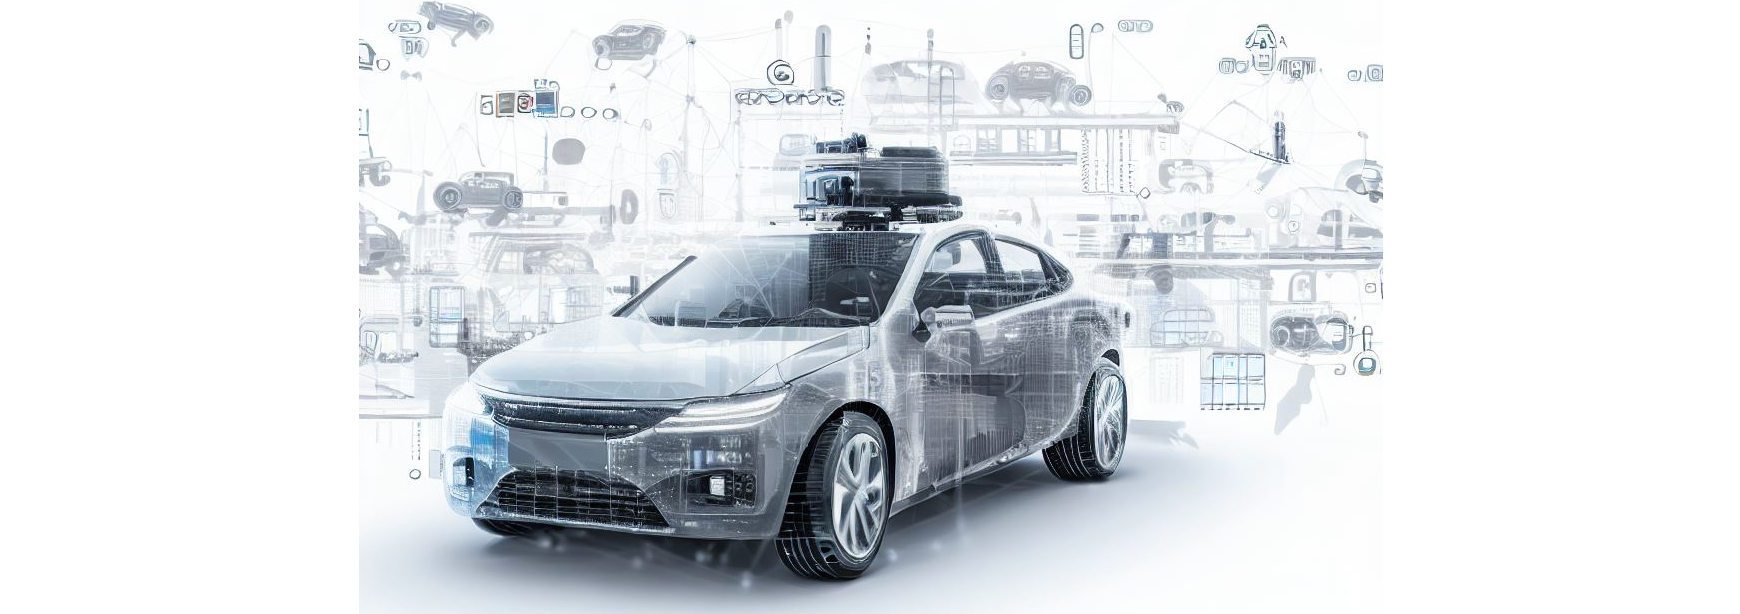 Branża Automotive: Rewolucja IoT w produkcji samochodów